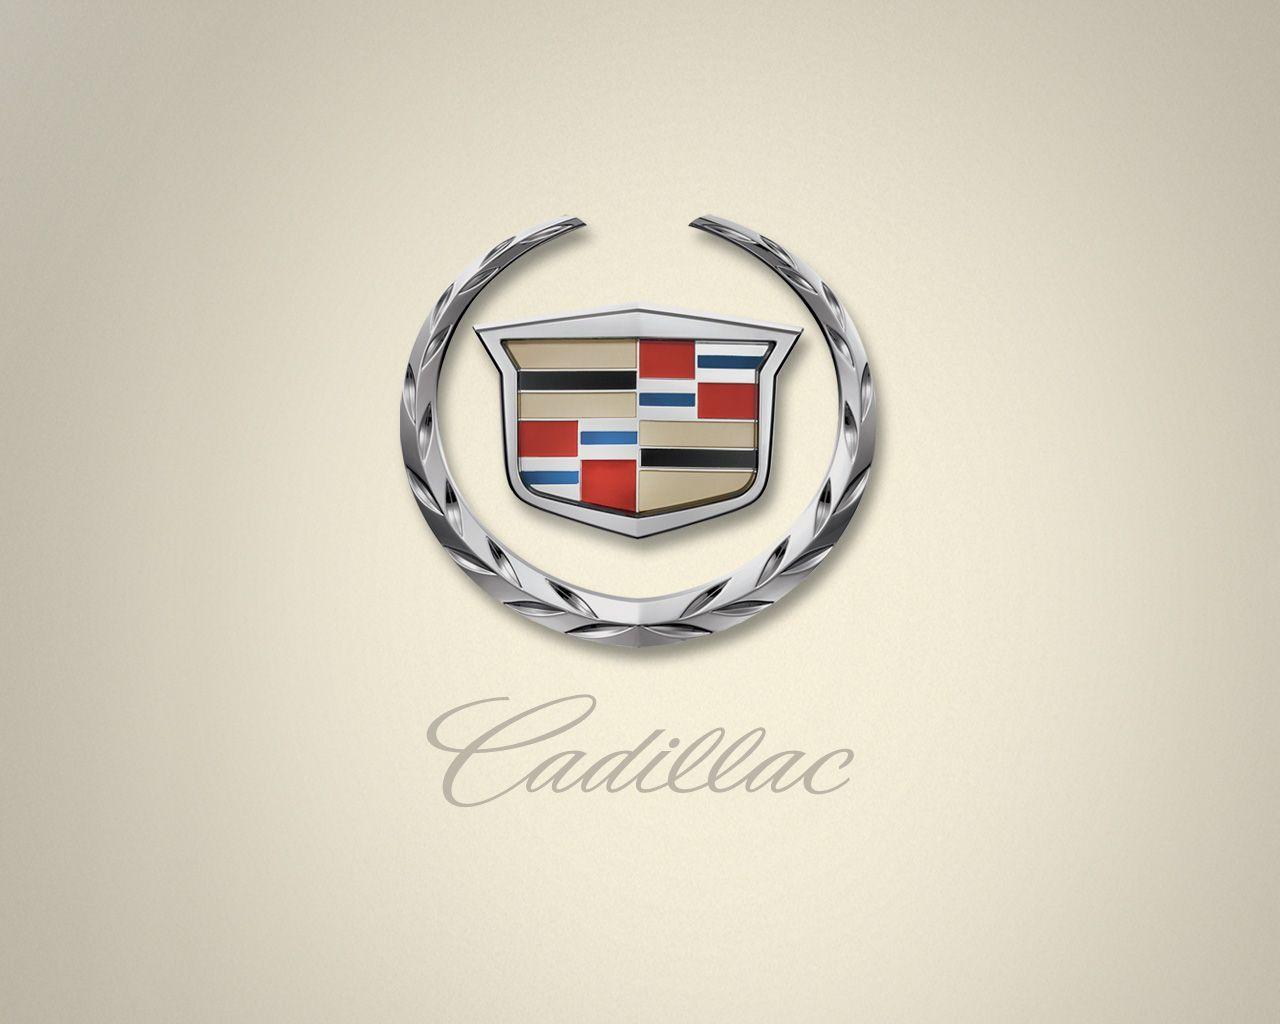 cadillac logo wallpaper